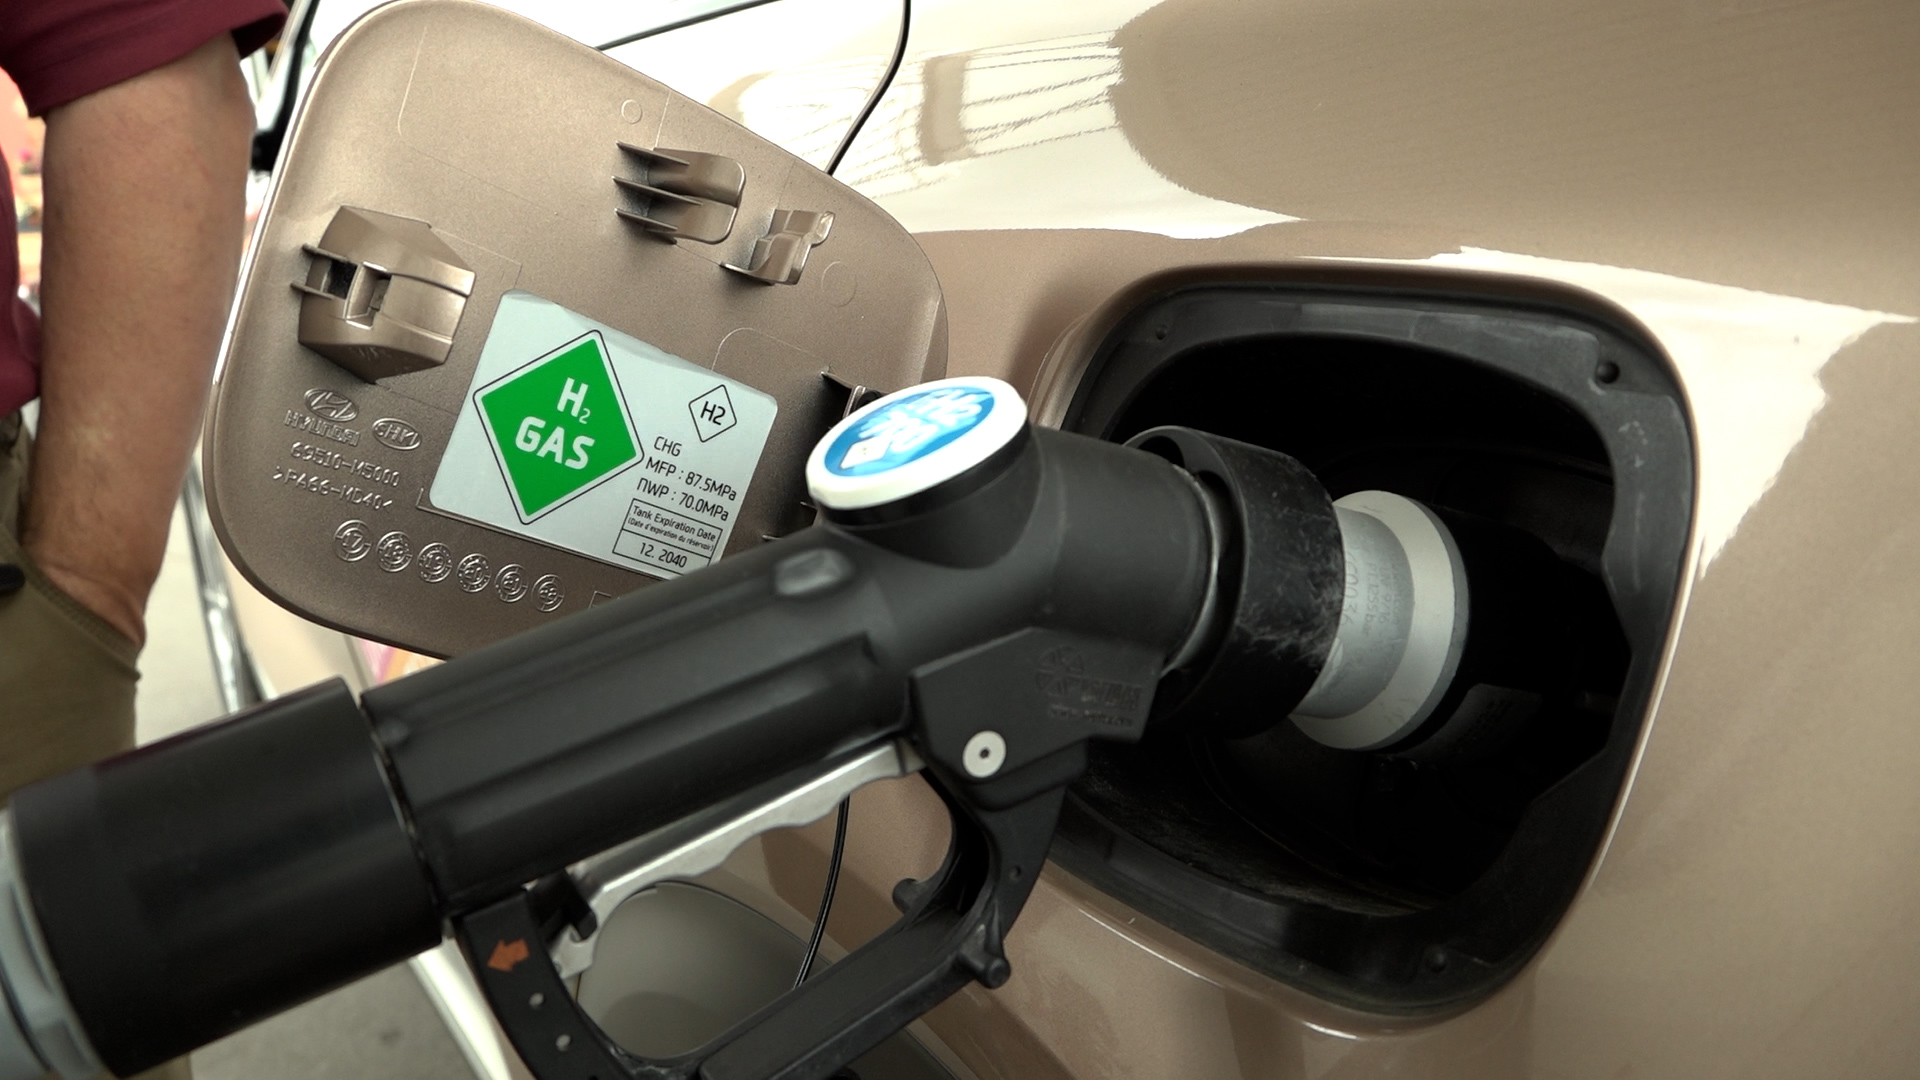 Wasserstoffauto: Eine Alternative zu Verbrennern und E-Auto?